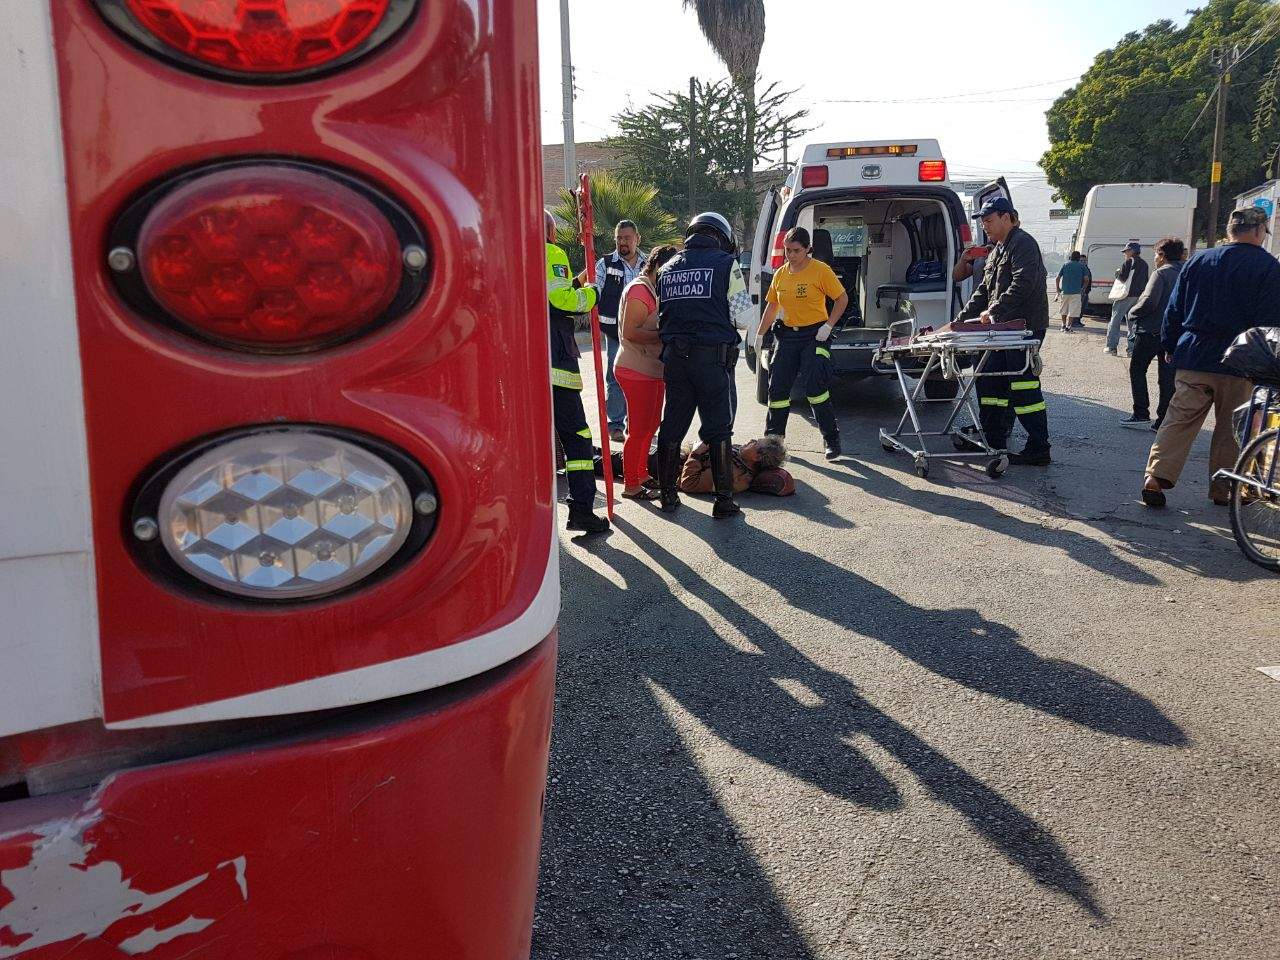 Un camión marca International color blanco de transporte de personal, que se desplazaba sobre la avenida Presidente Carranza, viró a su derecha en la calle Galeana, impactando a una motocicleta Italika de color blanco que circulaba a su costado en forma paralela. (EL SIGLO DE TORREÓN)

